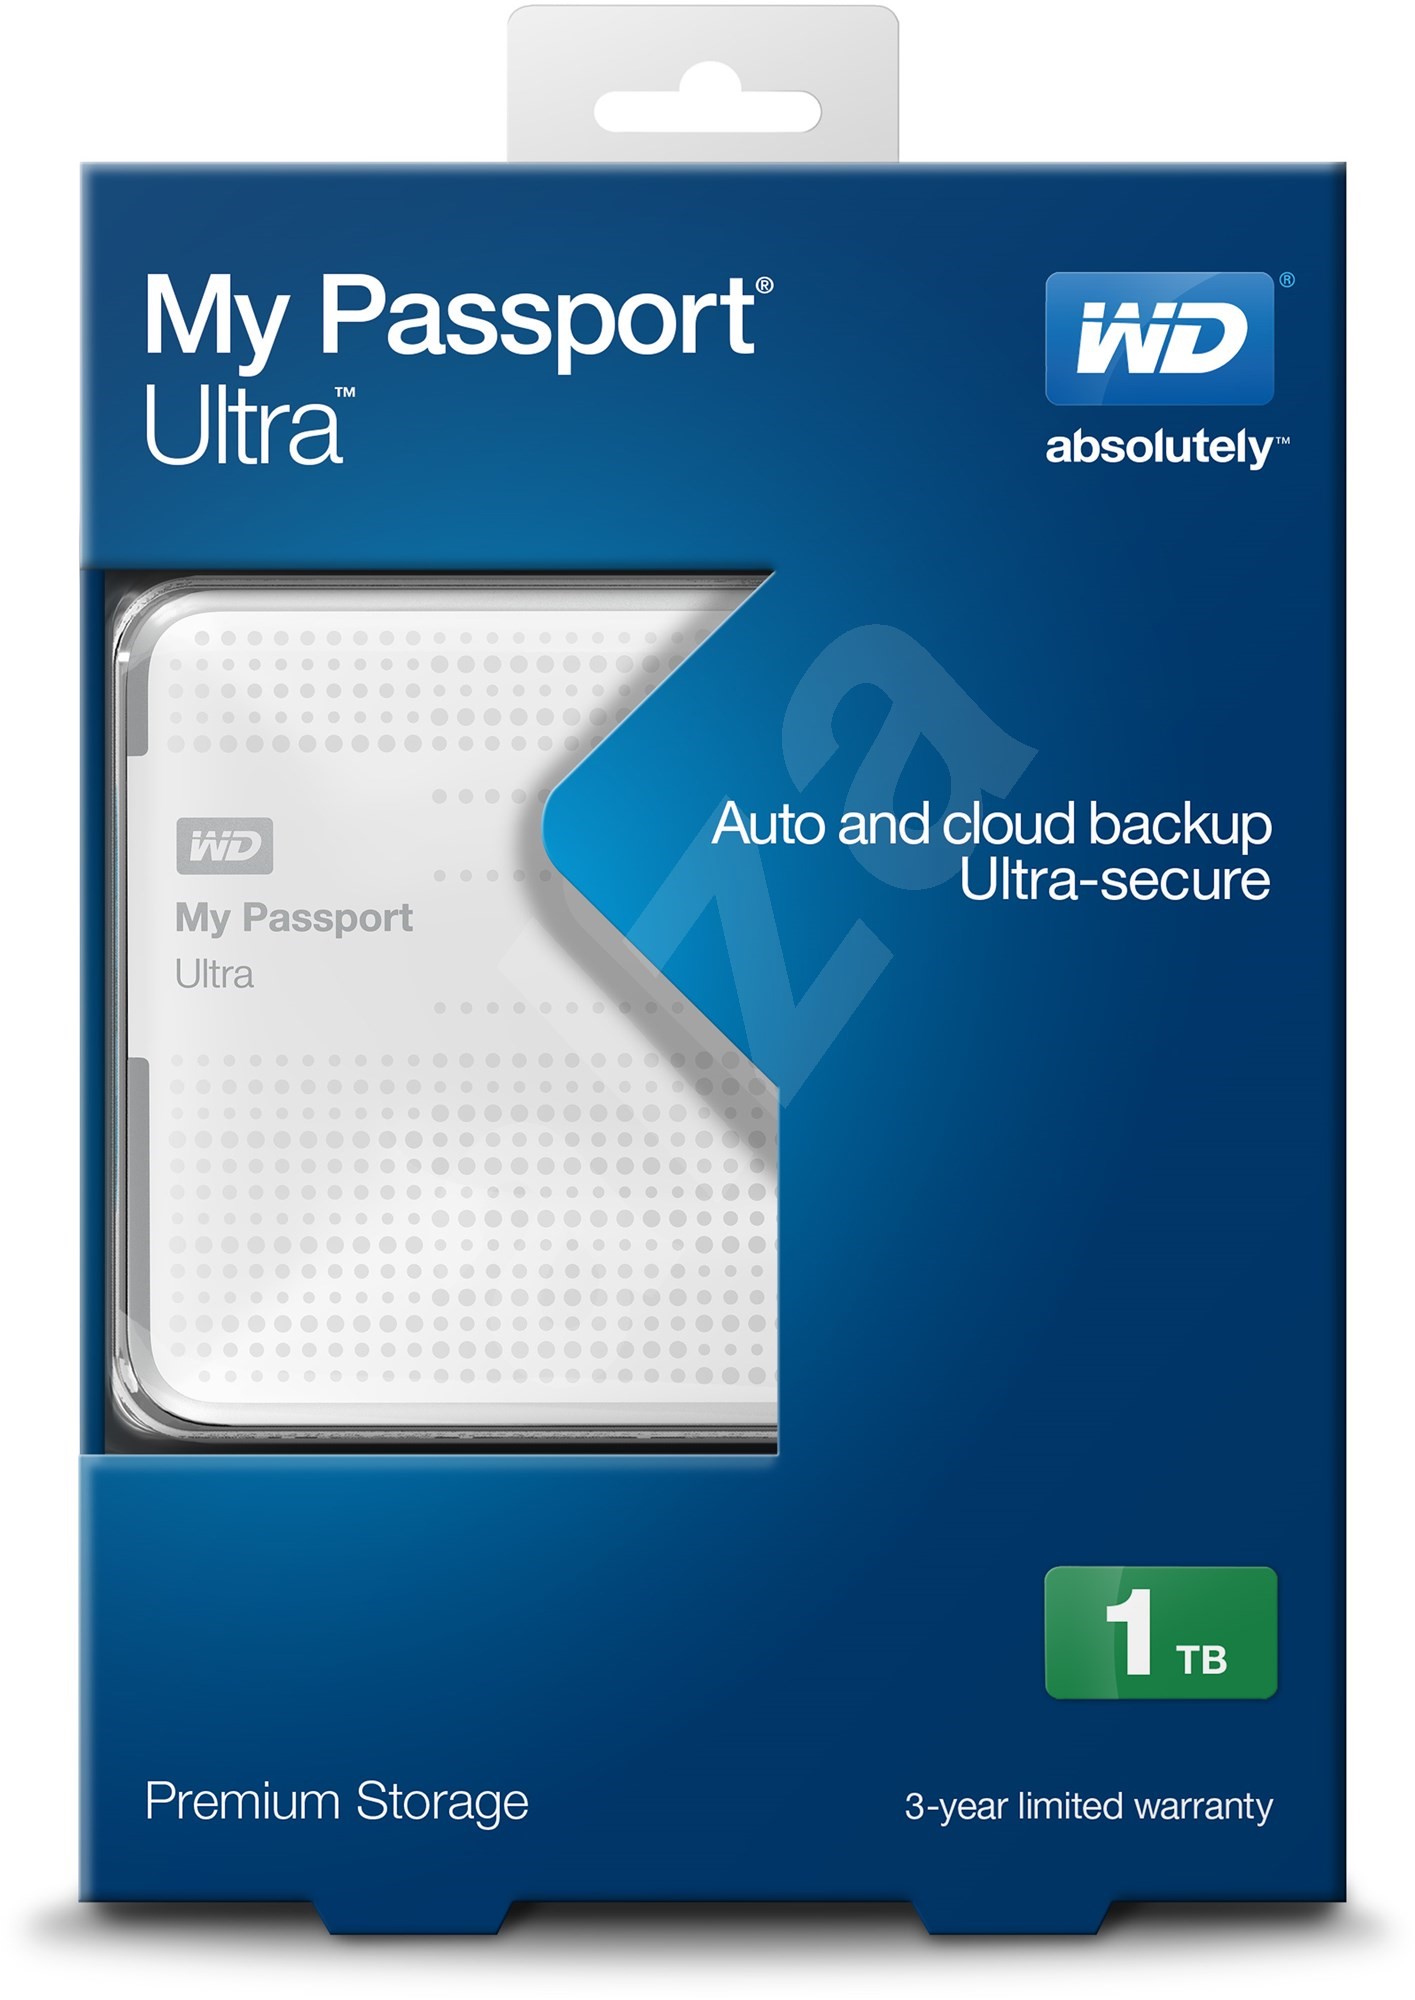 wd passport for mac repair